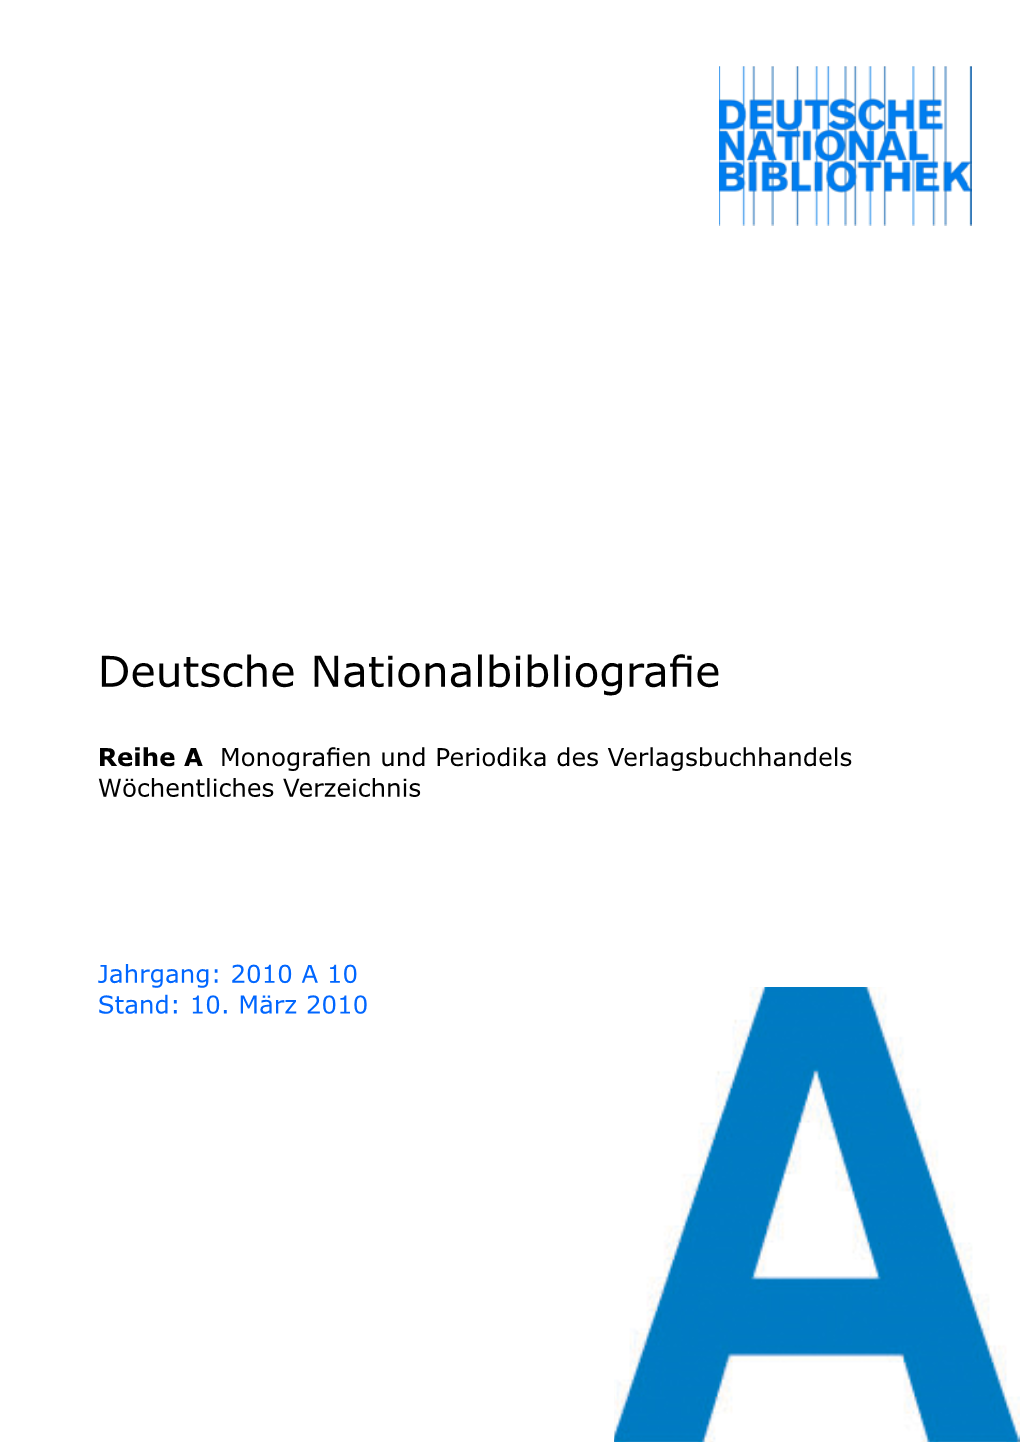 Deutsche Nationalbibliografie 2010 a 10